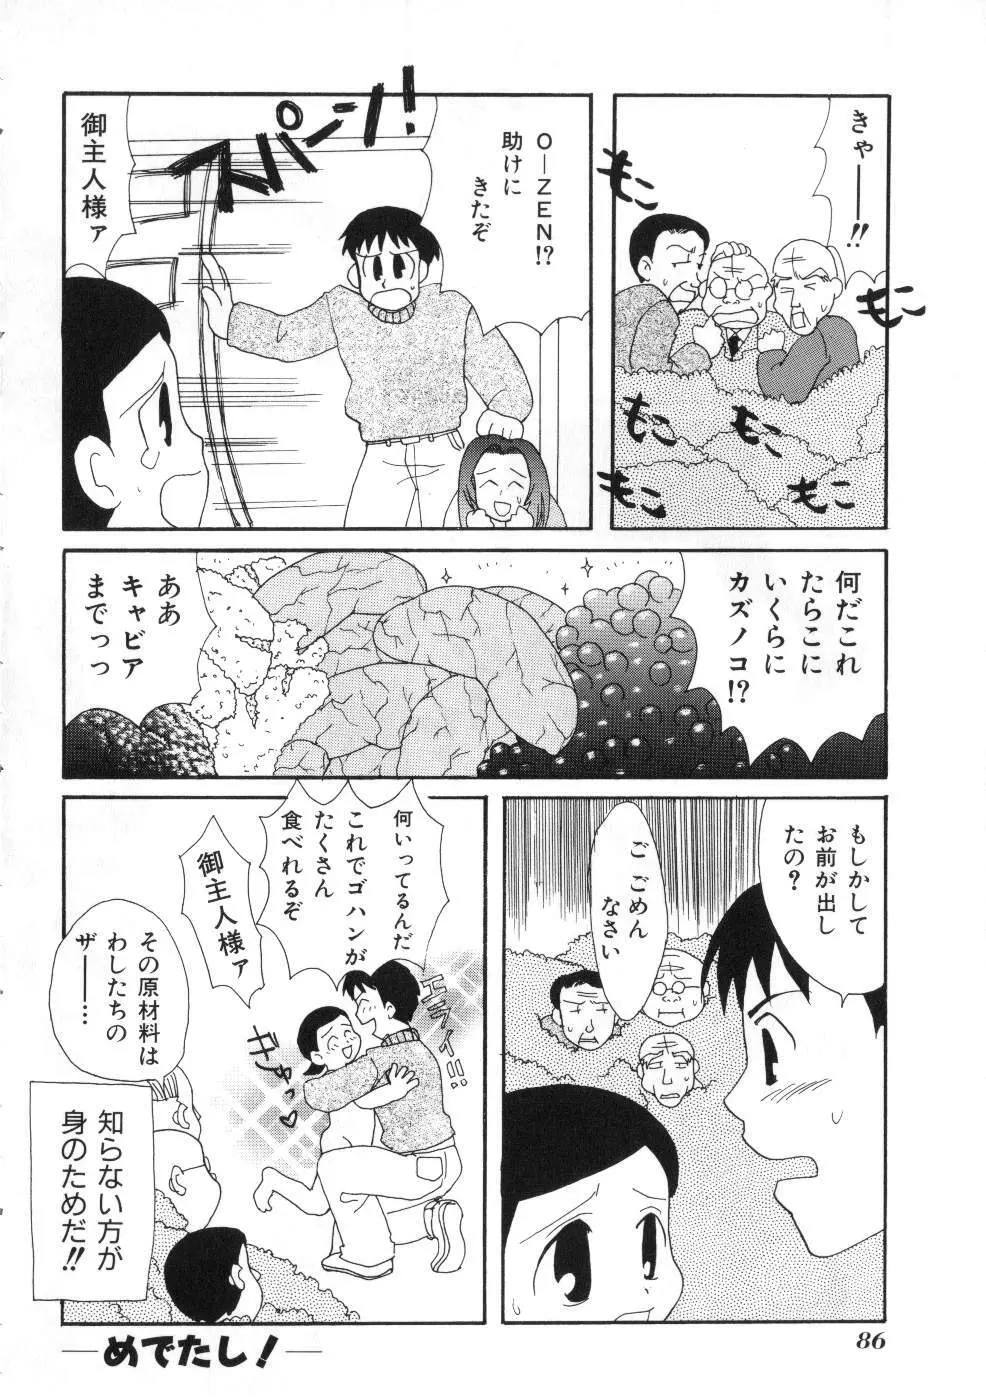 Miss ちゃいどる vol. 1 86ページ